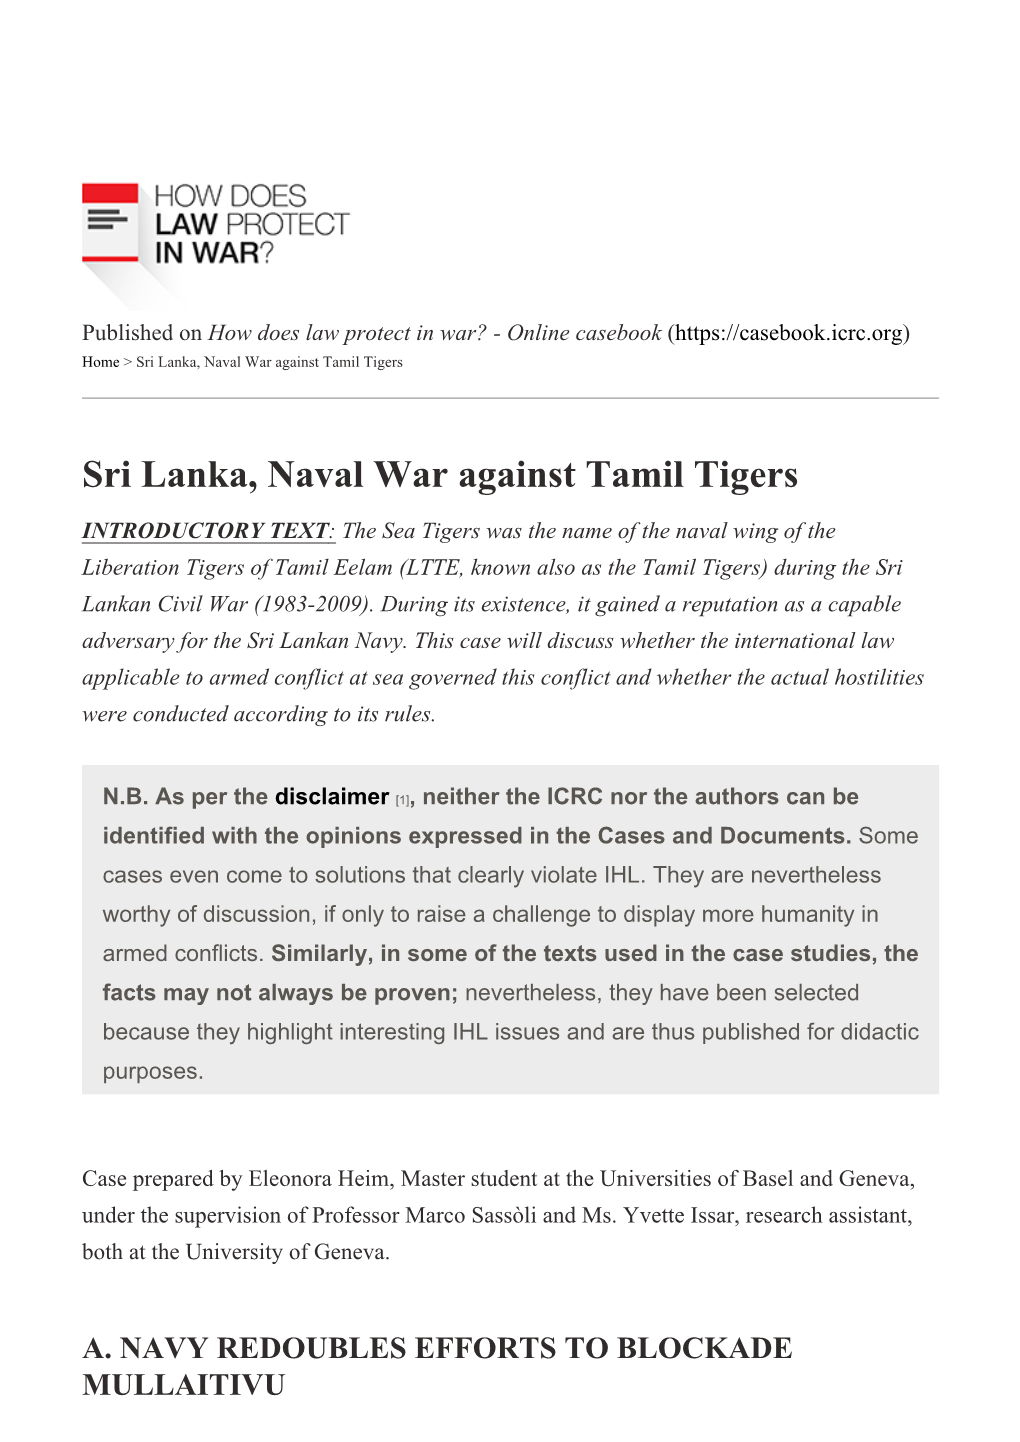 Sri Lanka, Naval War Against Tamil Tigers